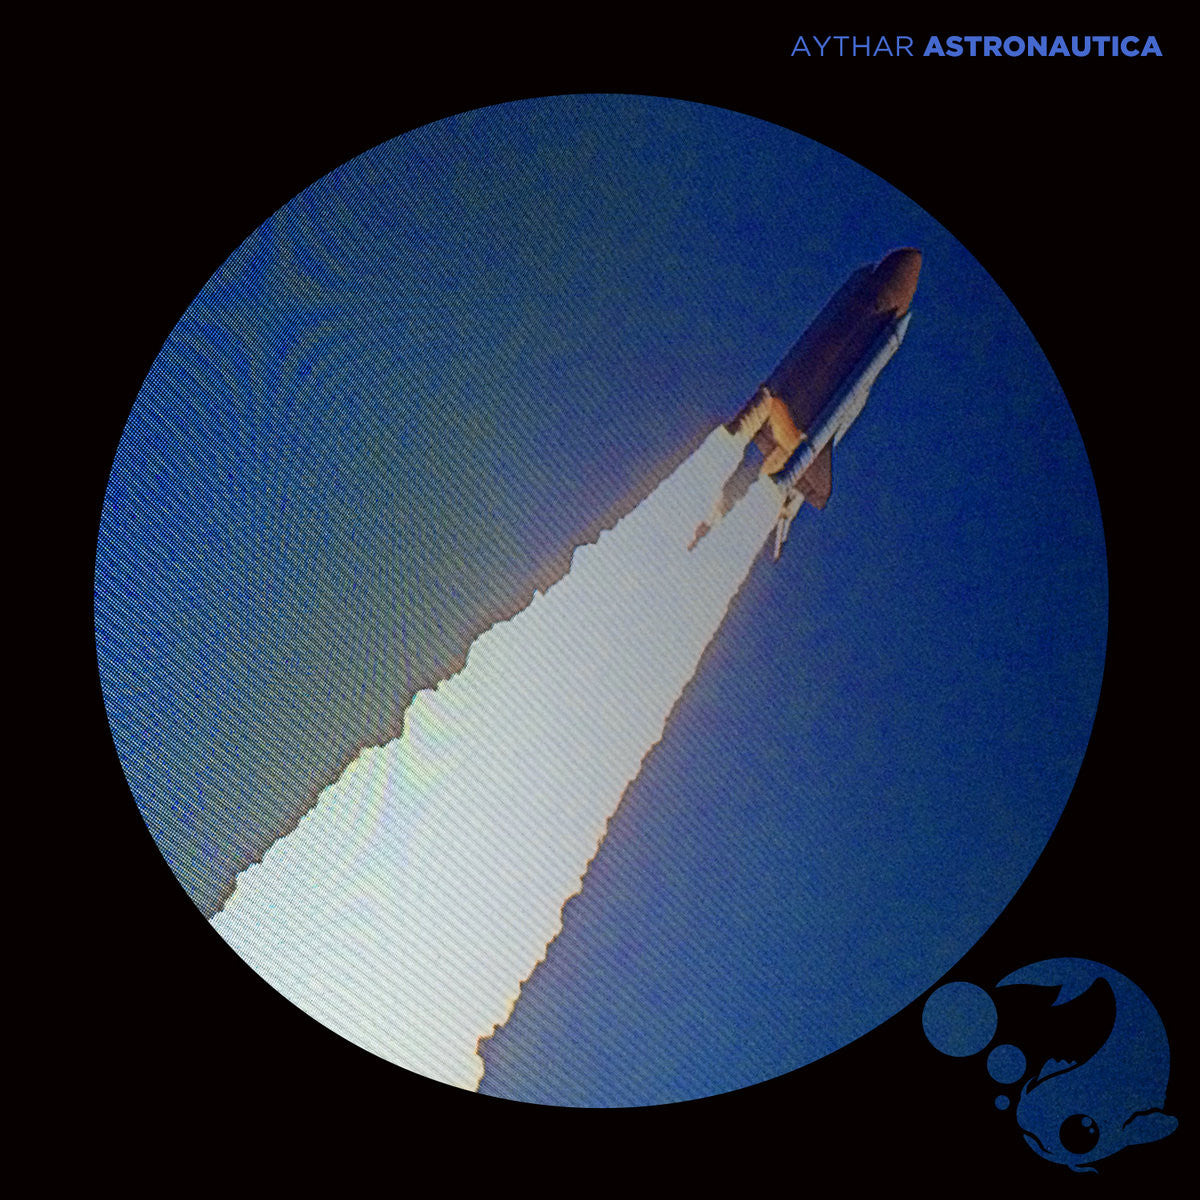 Aythar Astronautica Darla Records